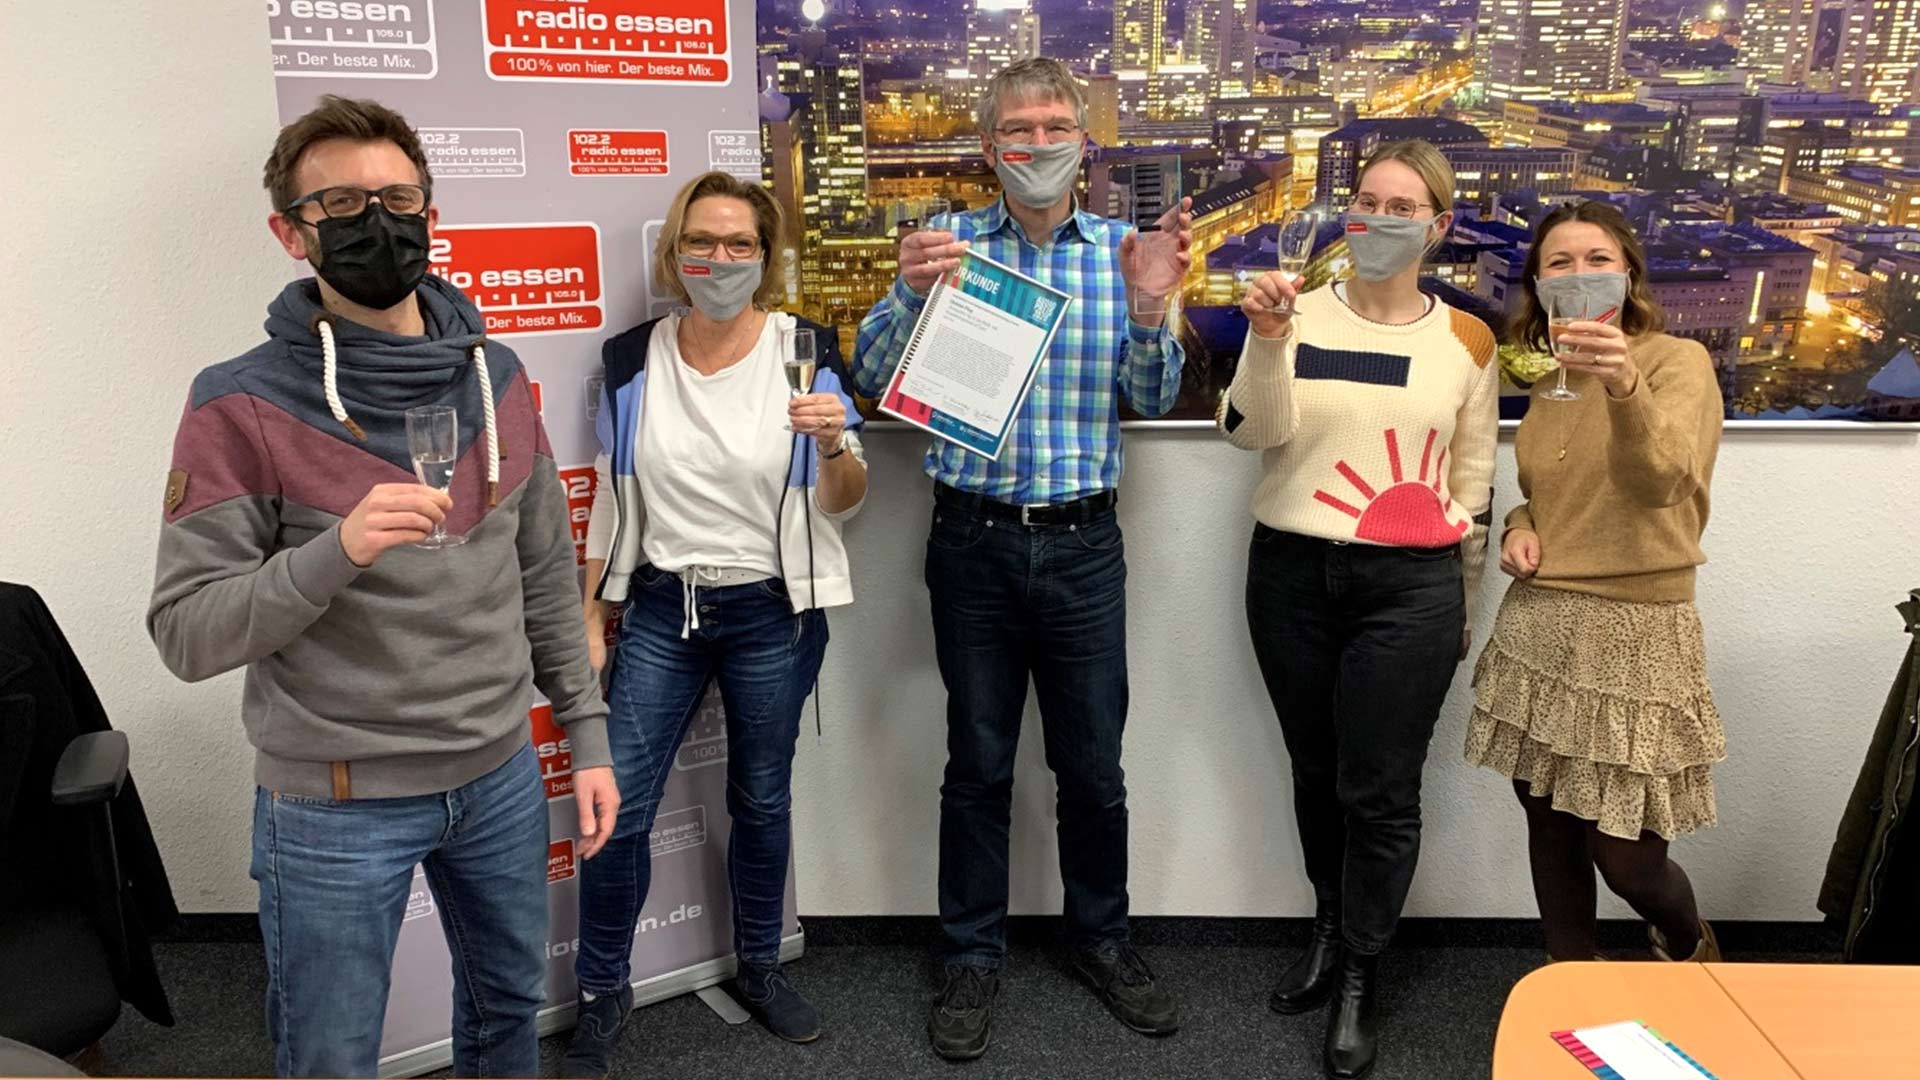 Chefredakteur Christian Pflug (Mitte) freut sich mit seinem Team von Radio Essen über den Audiopreis 2020 der LfM. Foto: Radio Essen